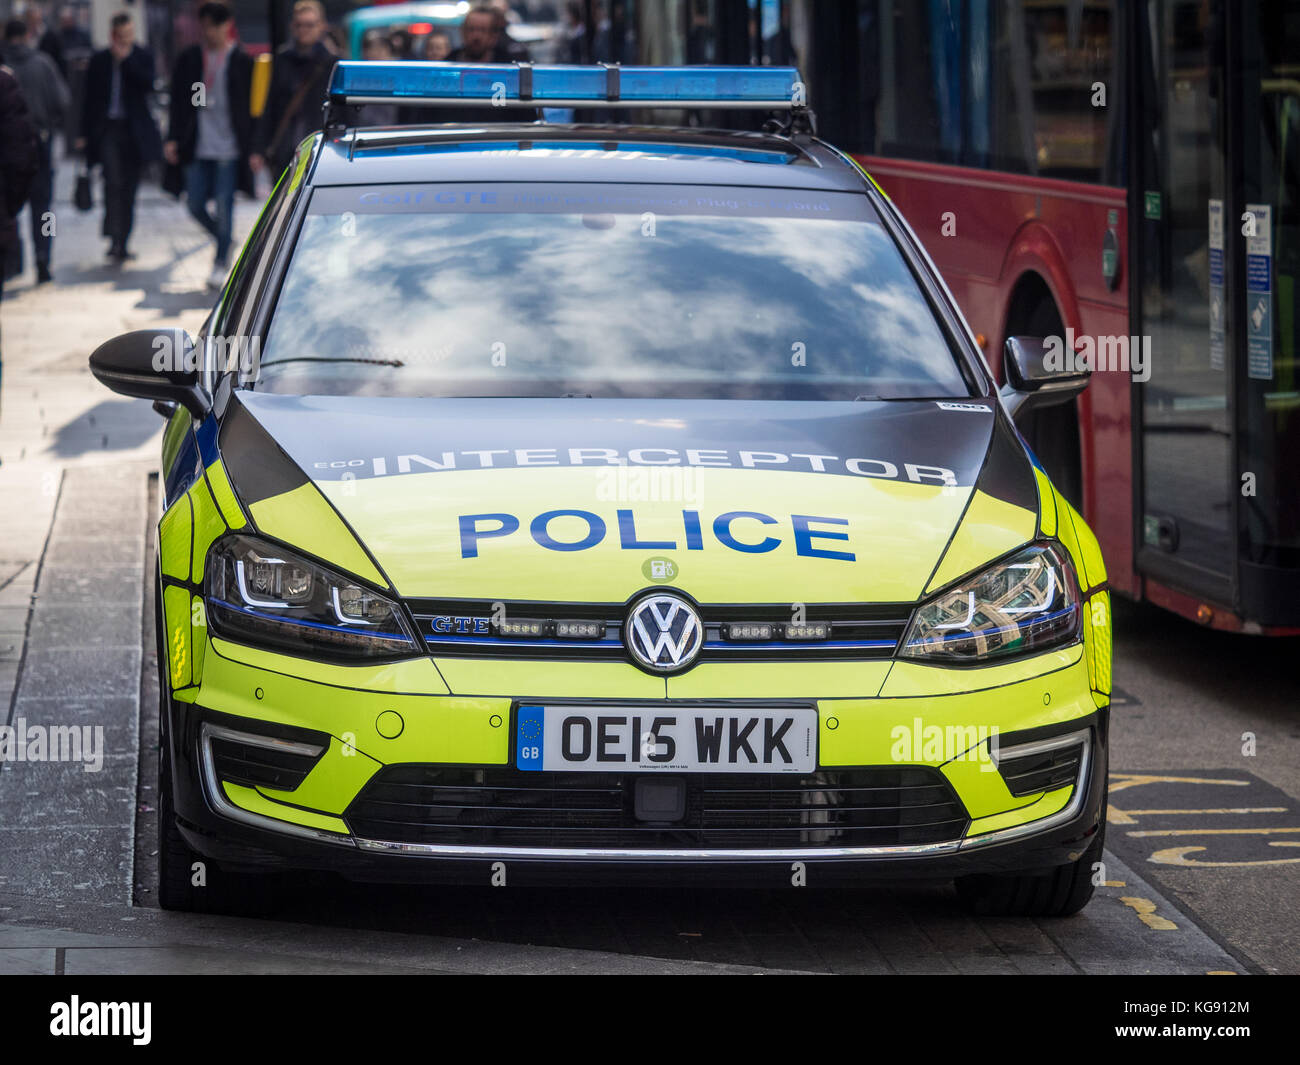 Eco Police Interceptor Car - City of London Police utilizando un coche de policía híbrido VW Golf GTE como interceptor de respuesta rápida Foto de stock